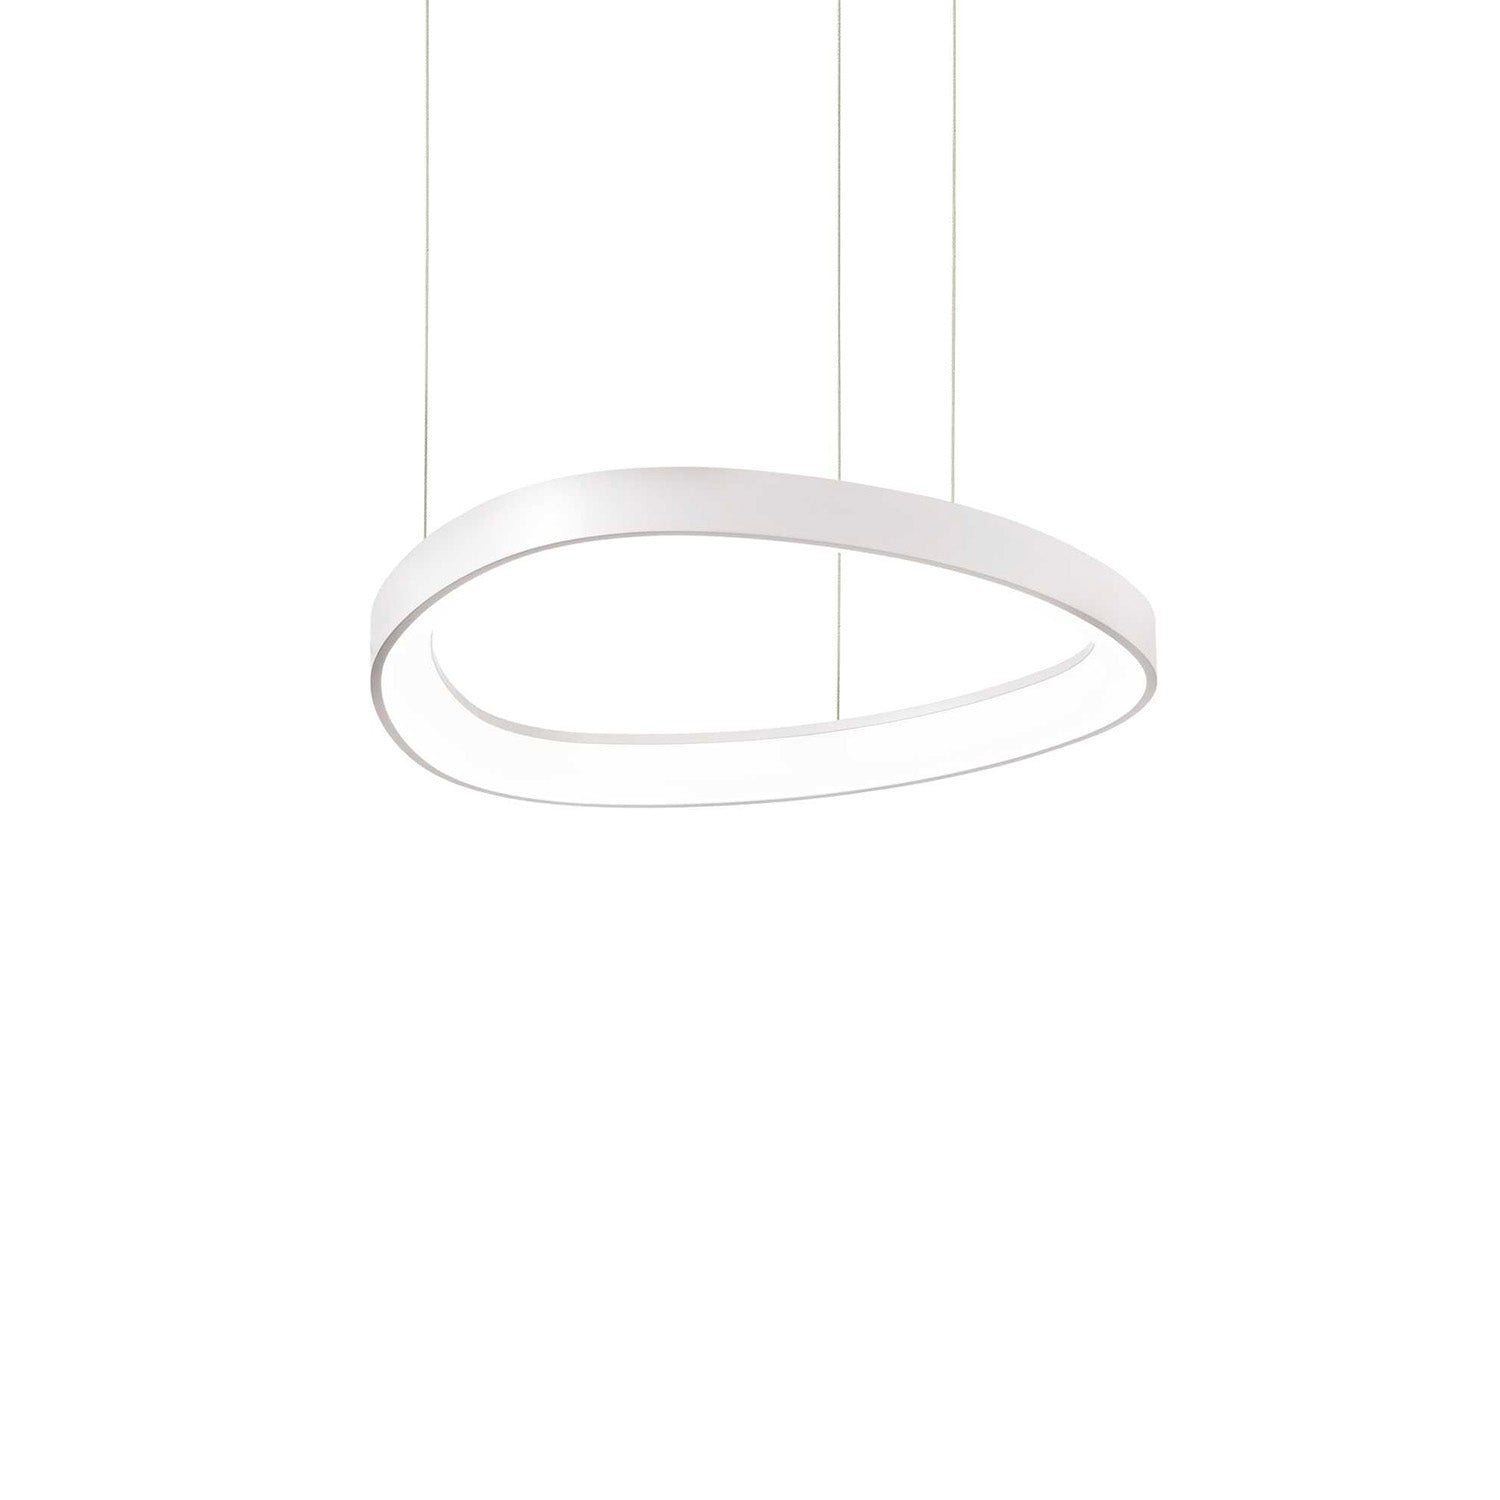 GEMINI - Integrated LED oval pendant light in gold, black or white aluminum